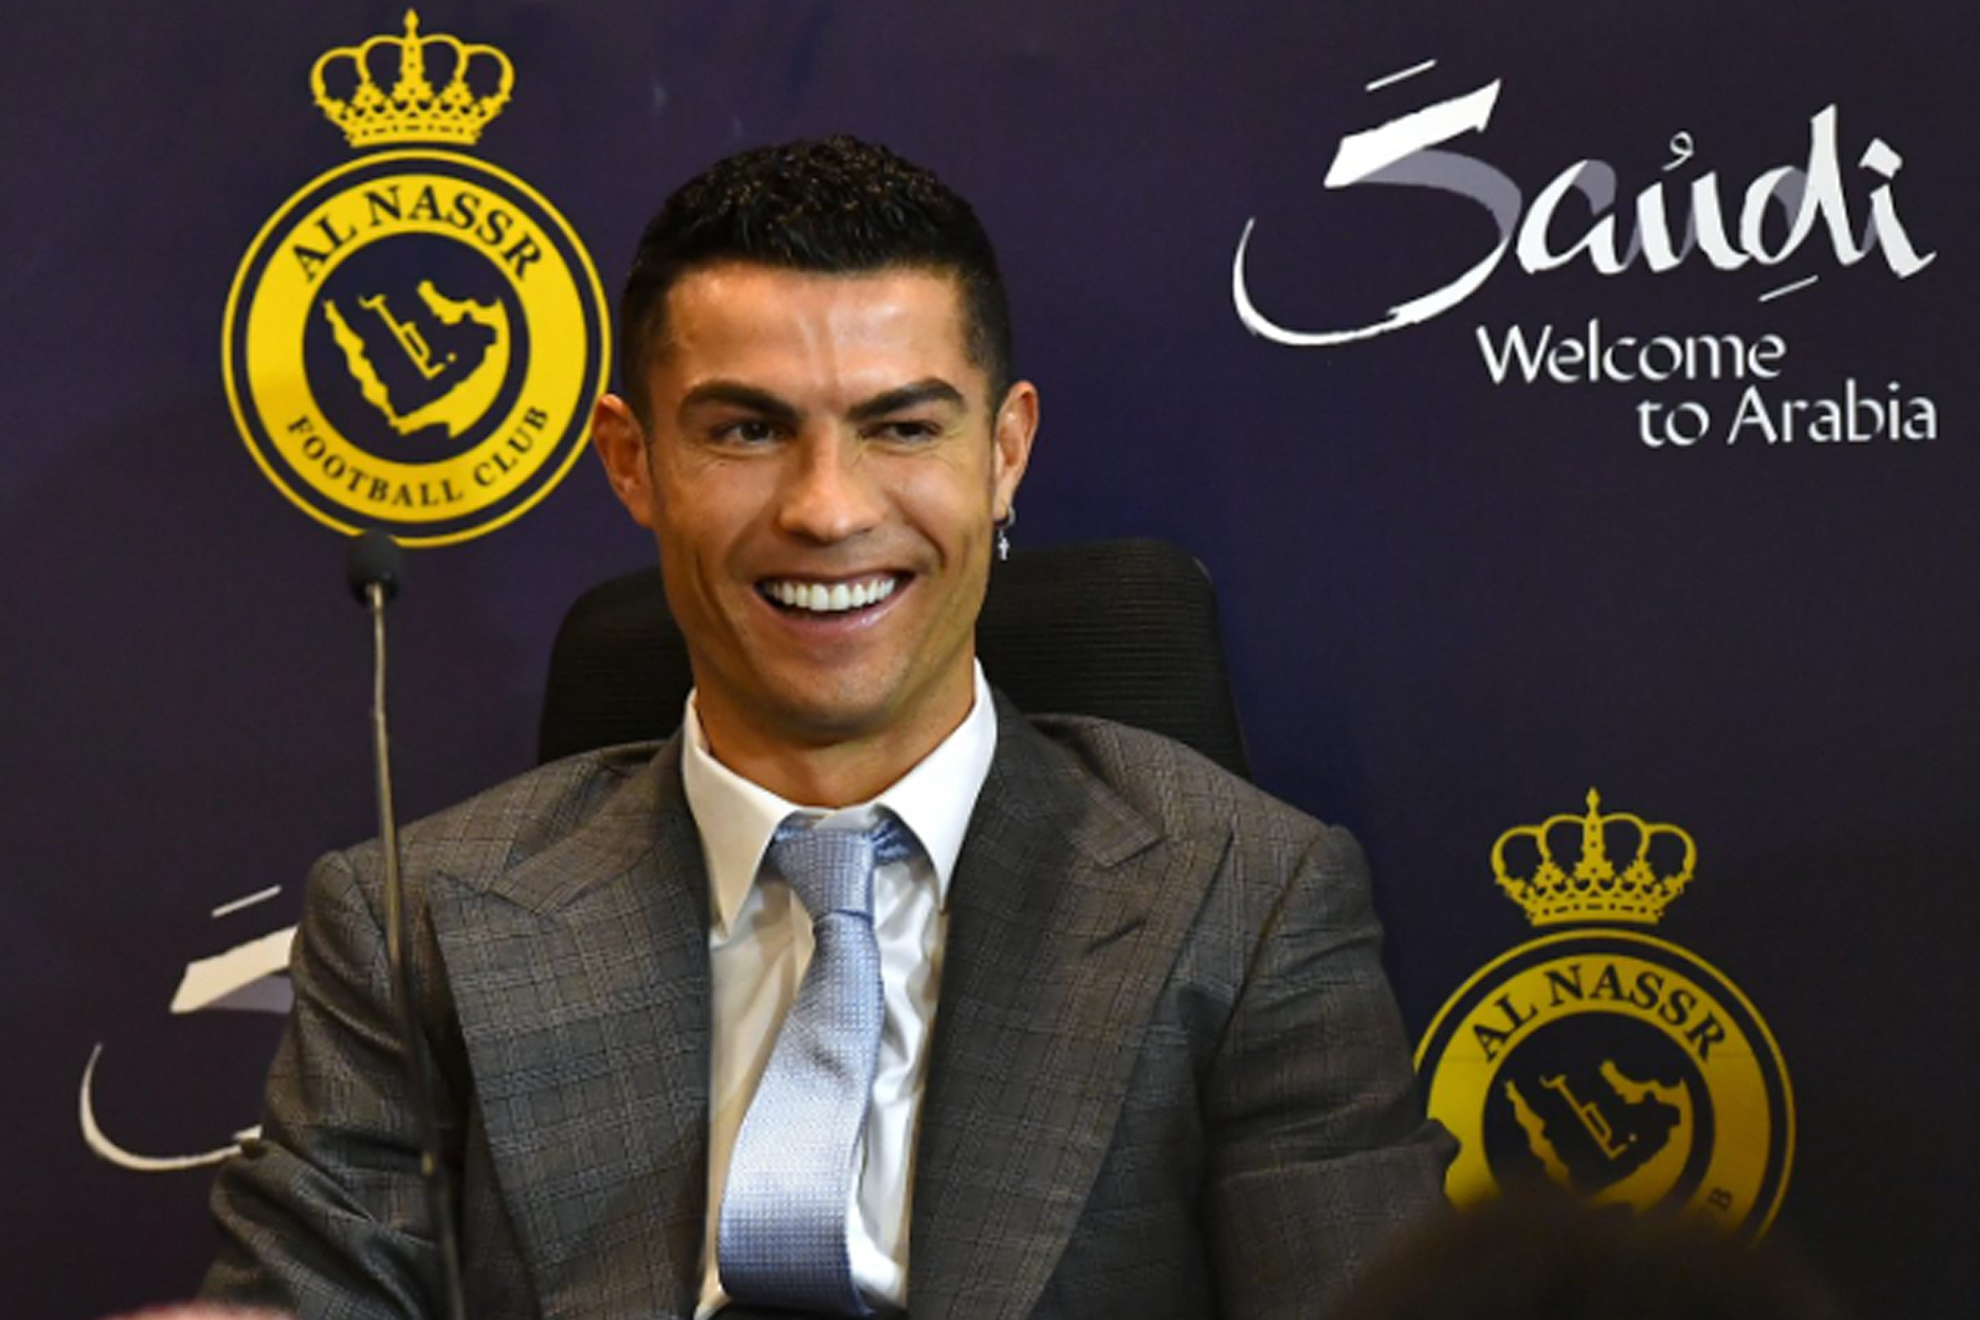 Cristiano Ronaldo le regala una paga extra a los trabajadores del medio que denunció hace años